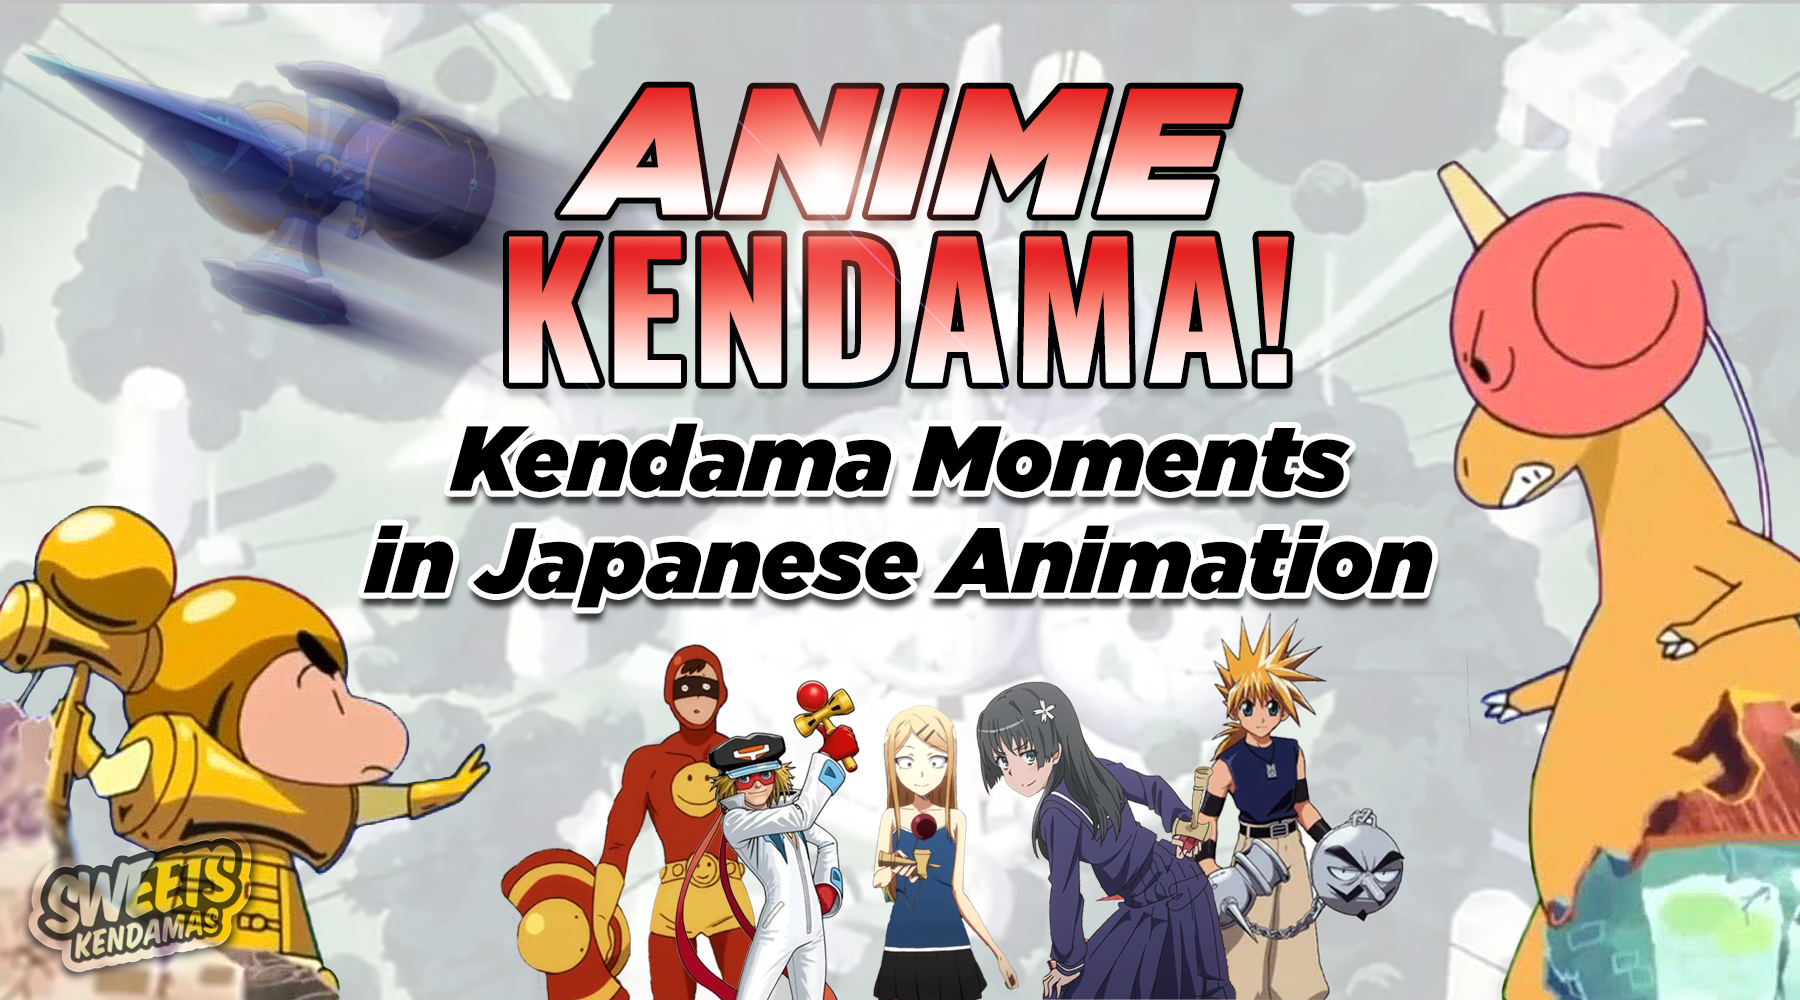 Anime X Kendama! 10 Kendama Appearances in Japanese Animation